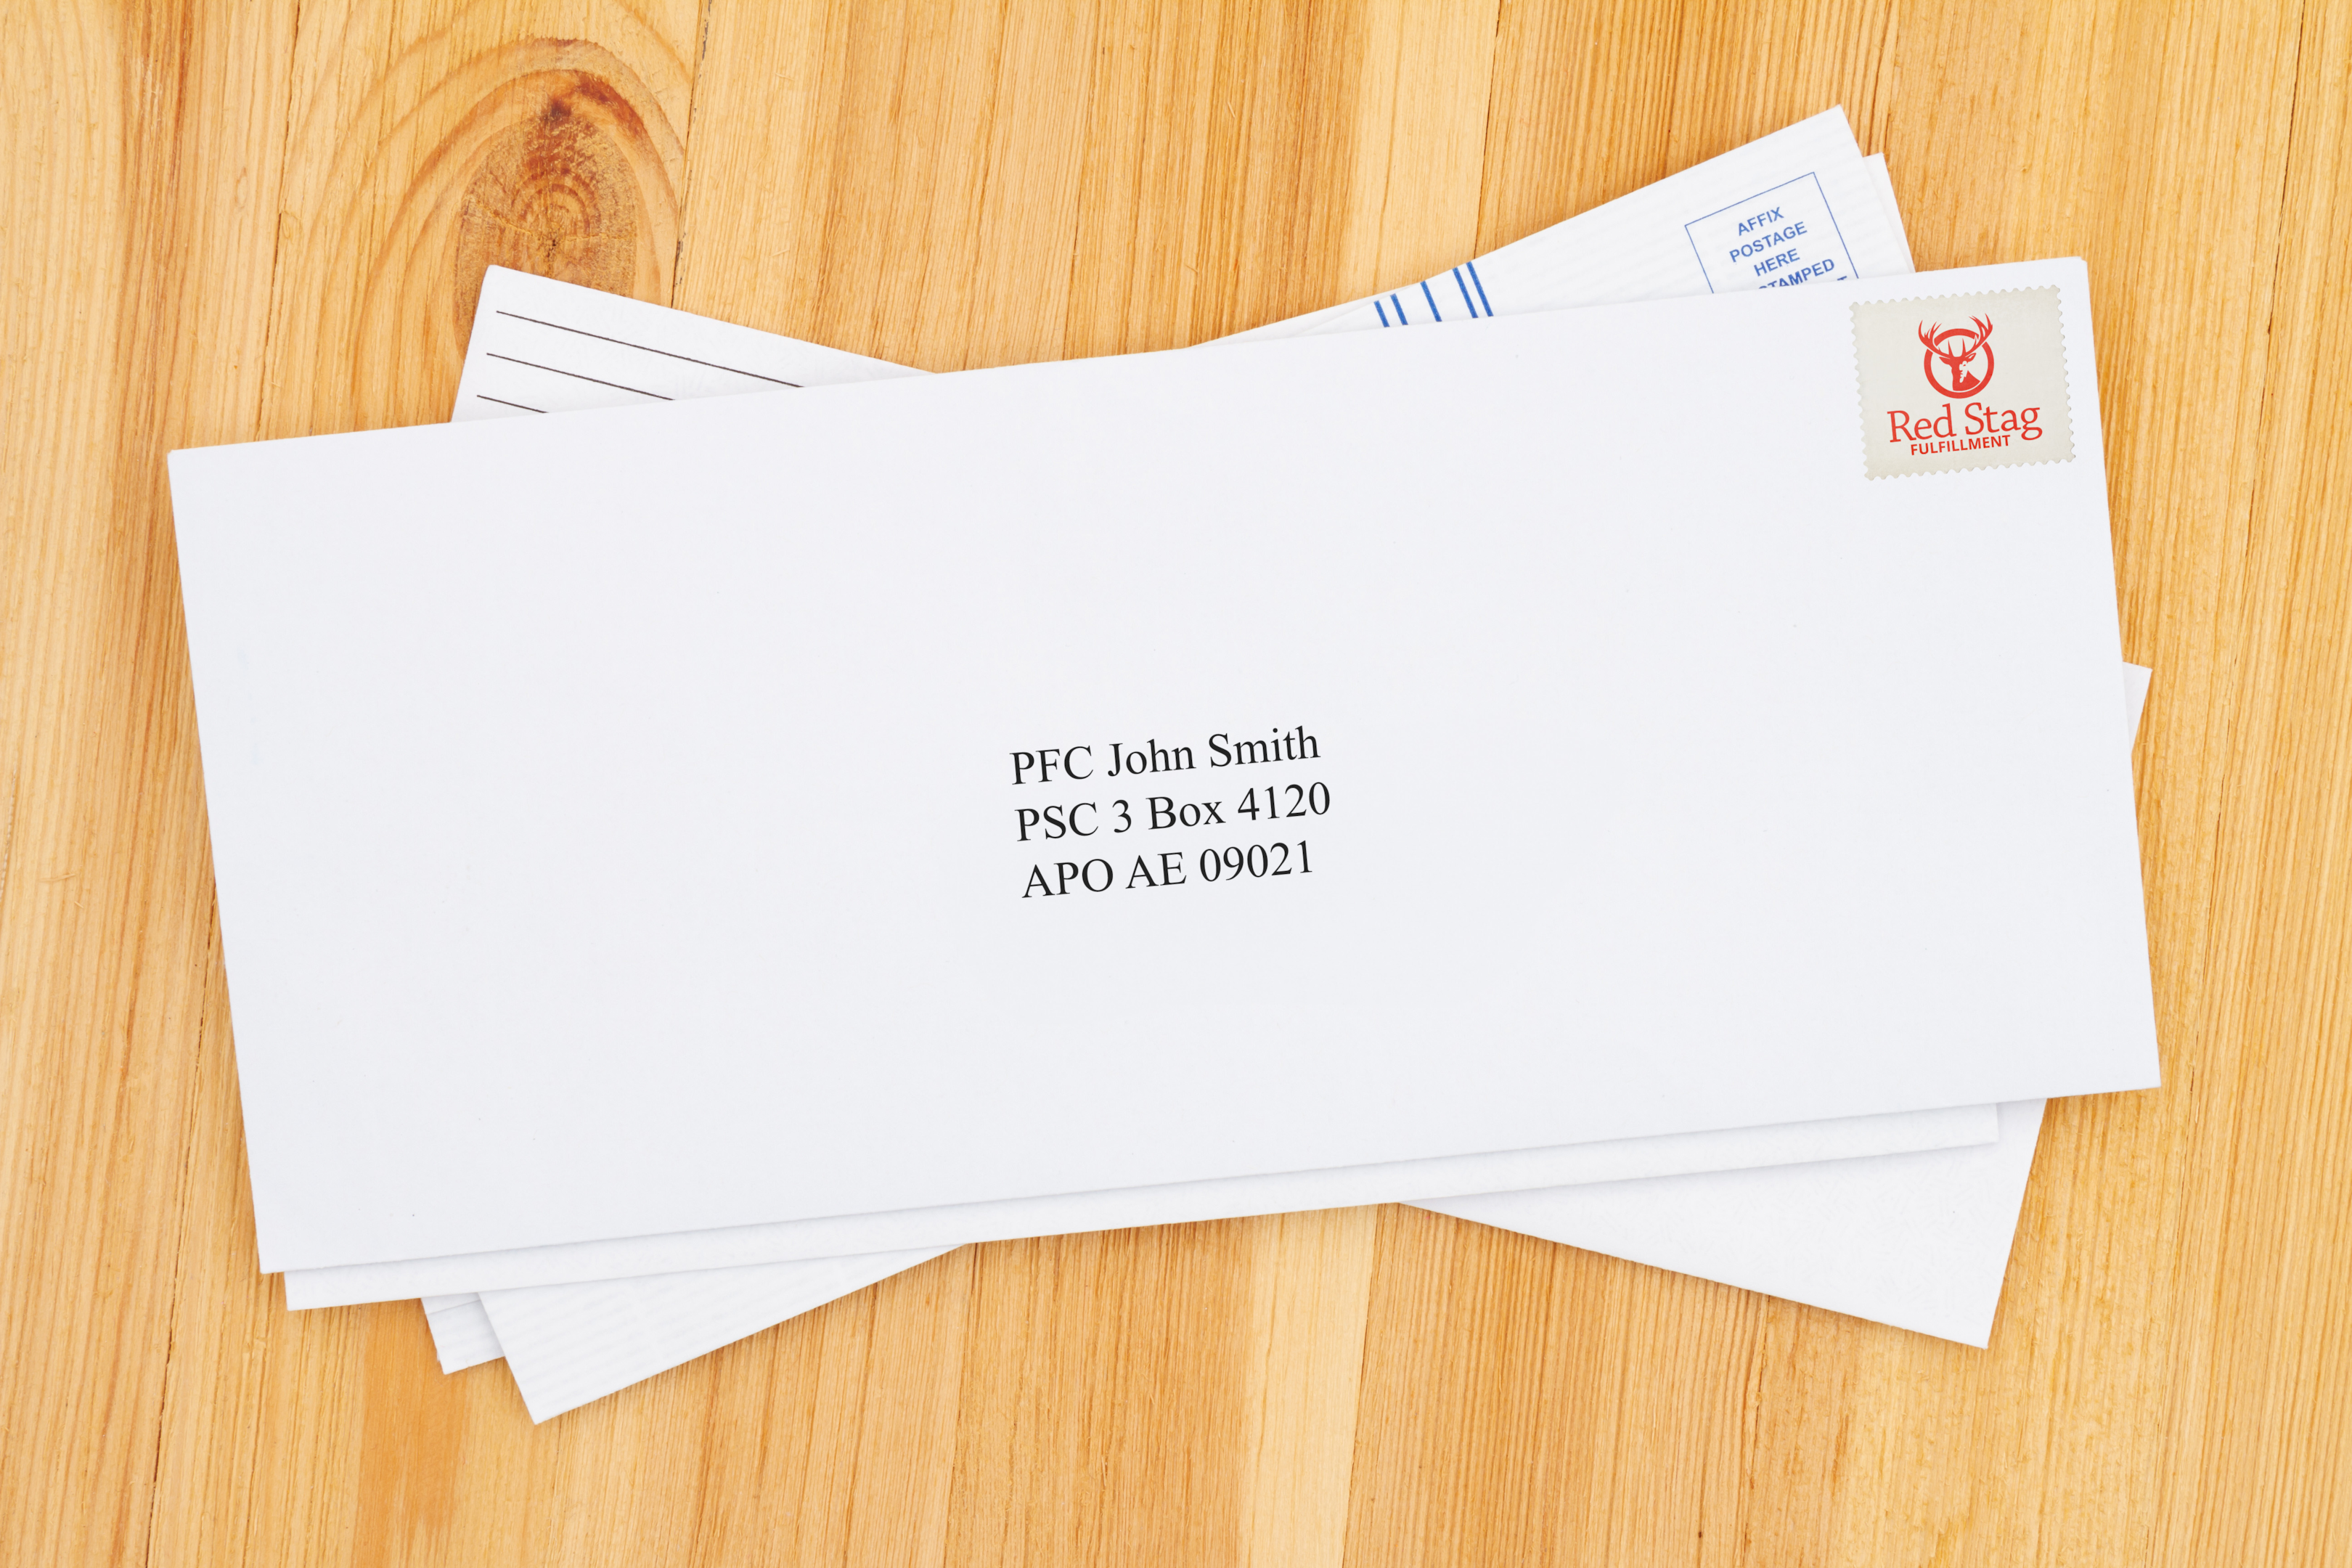 envelope with an APO mailing address: PFC John Smith, PSC 3 Box 4120, APO AE 09021